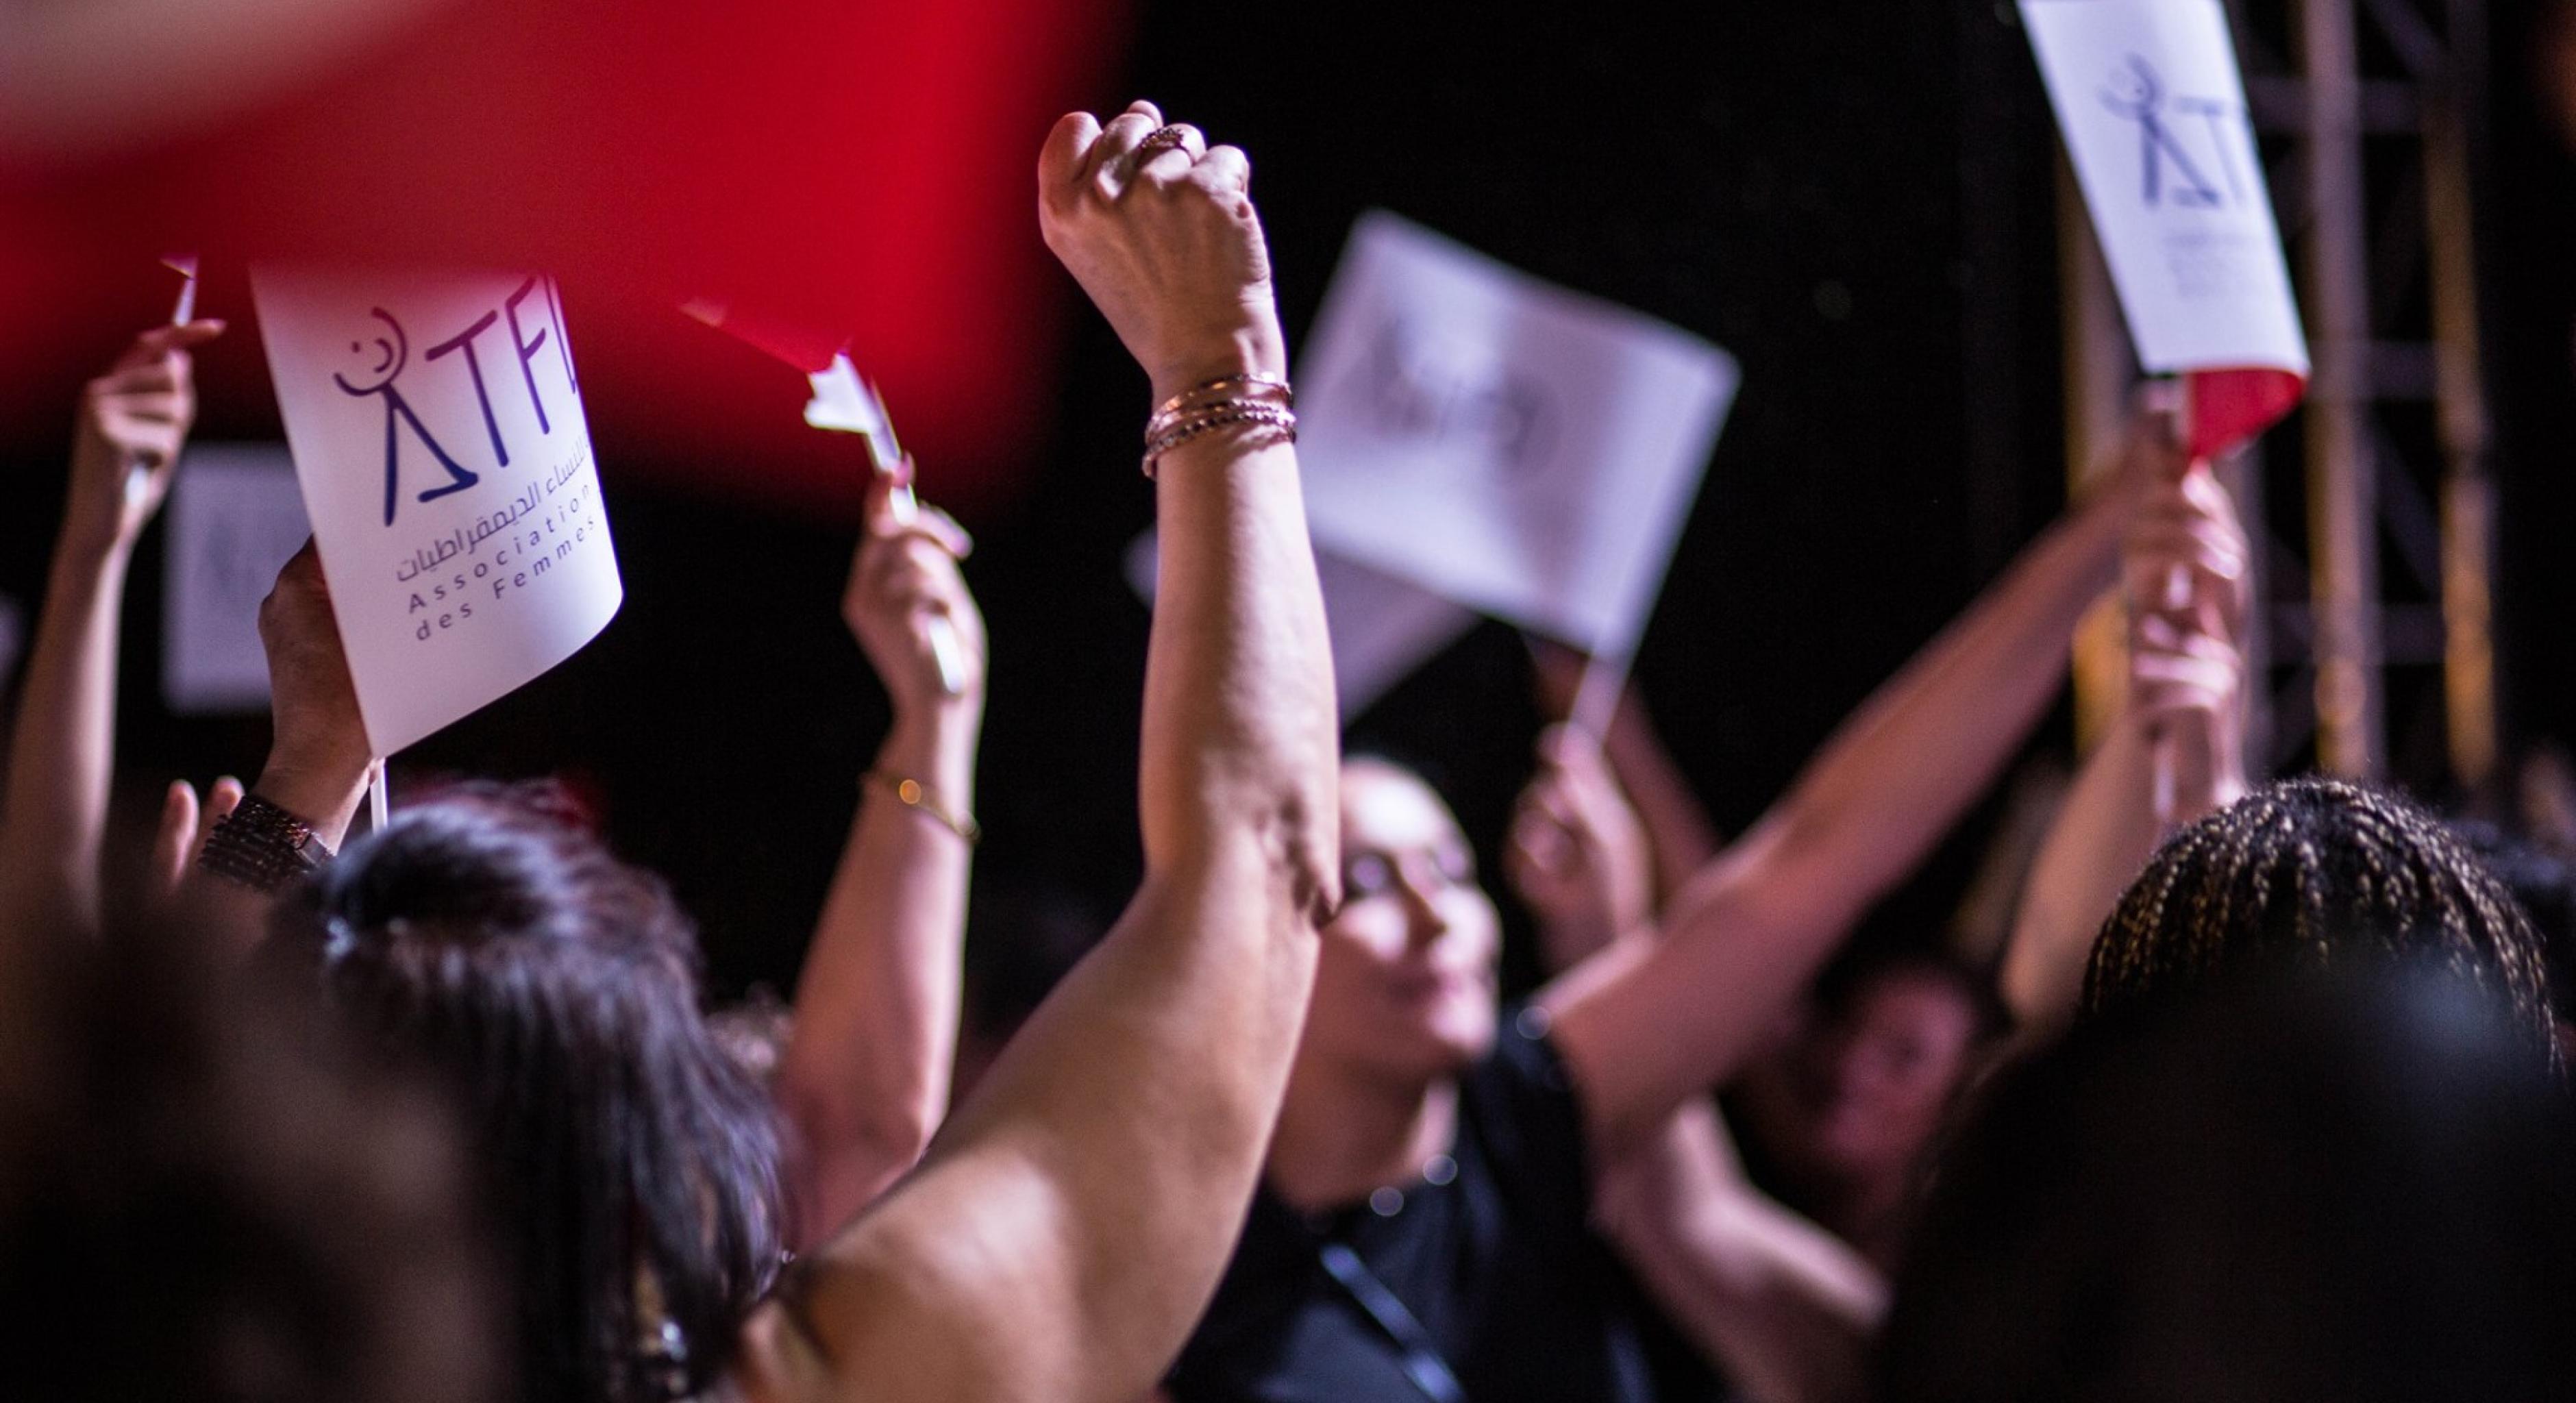 Frauen halten Plakate mit dem ATFD-Logo in die Luft